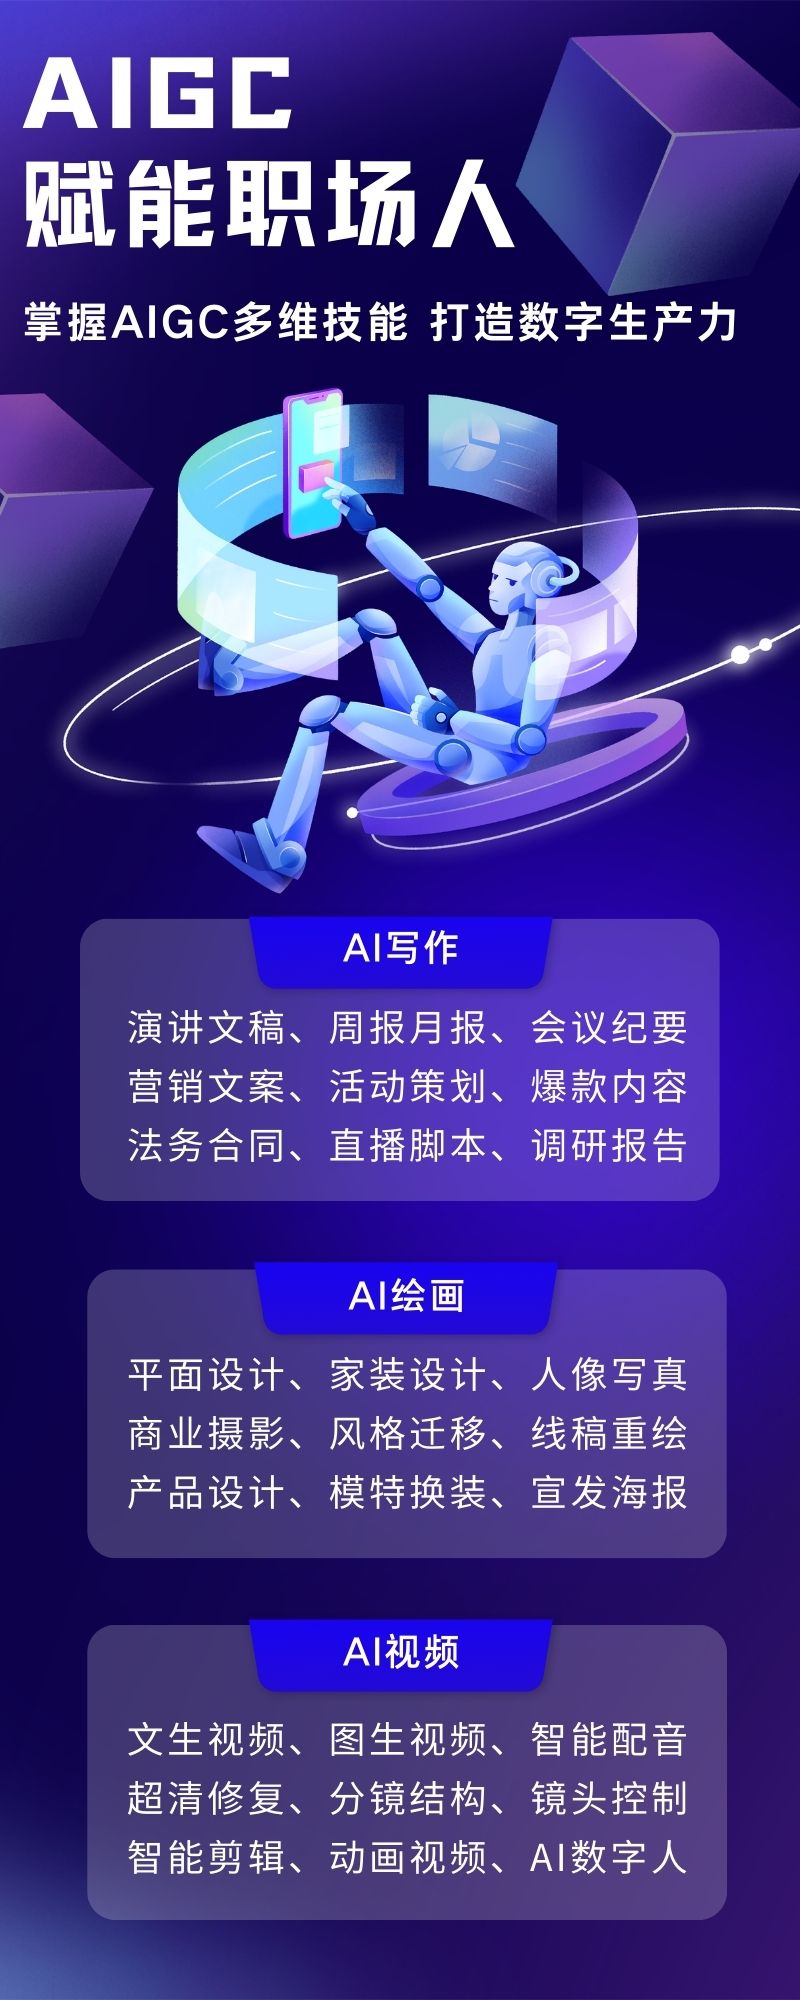 蓝紫色机器人编程插画科技科技分享中文信息图表.jpg